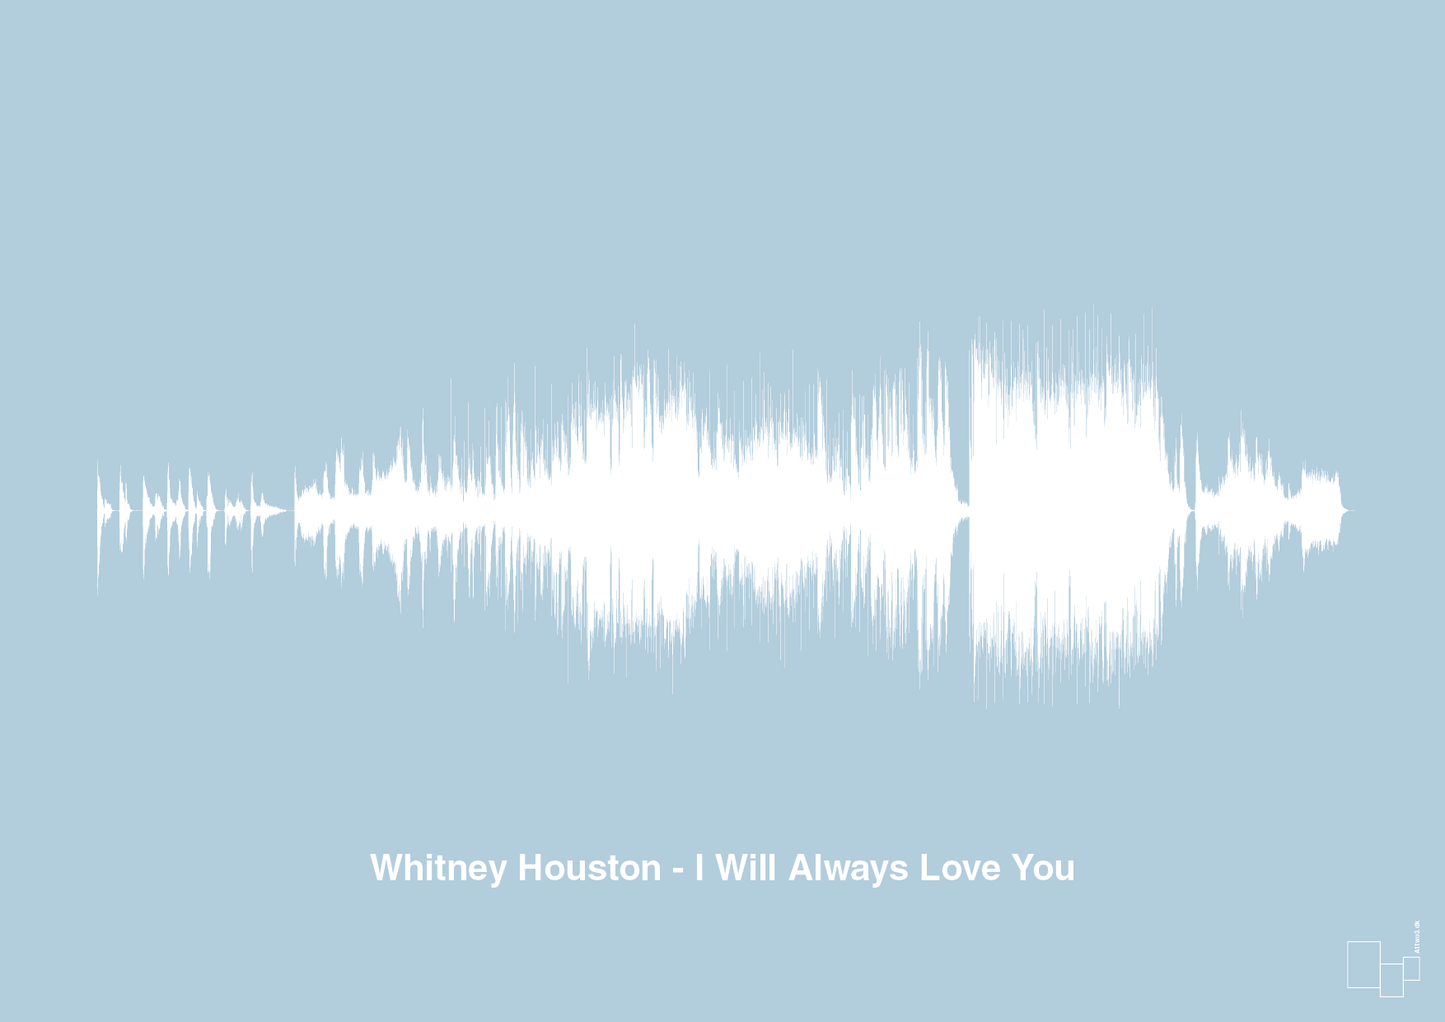 whitney houston - i will always love you - Plakat med Musik i Heavenly Blue